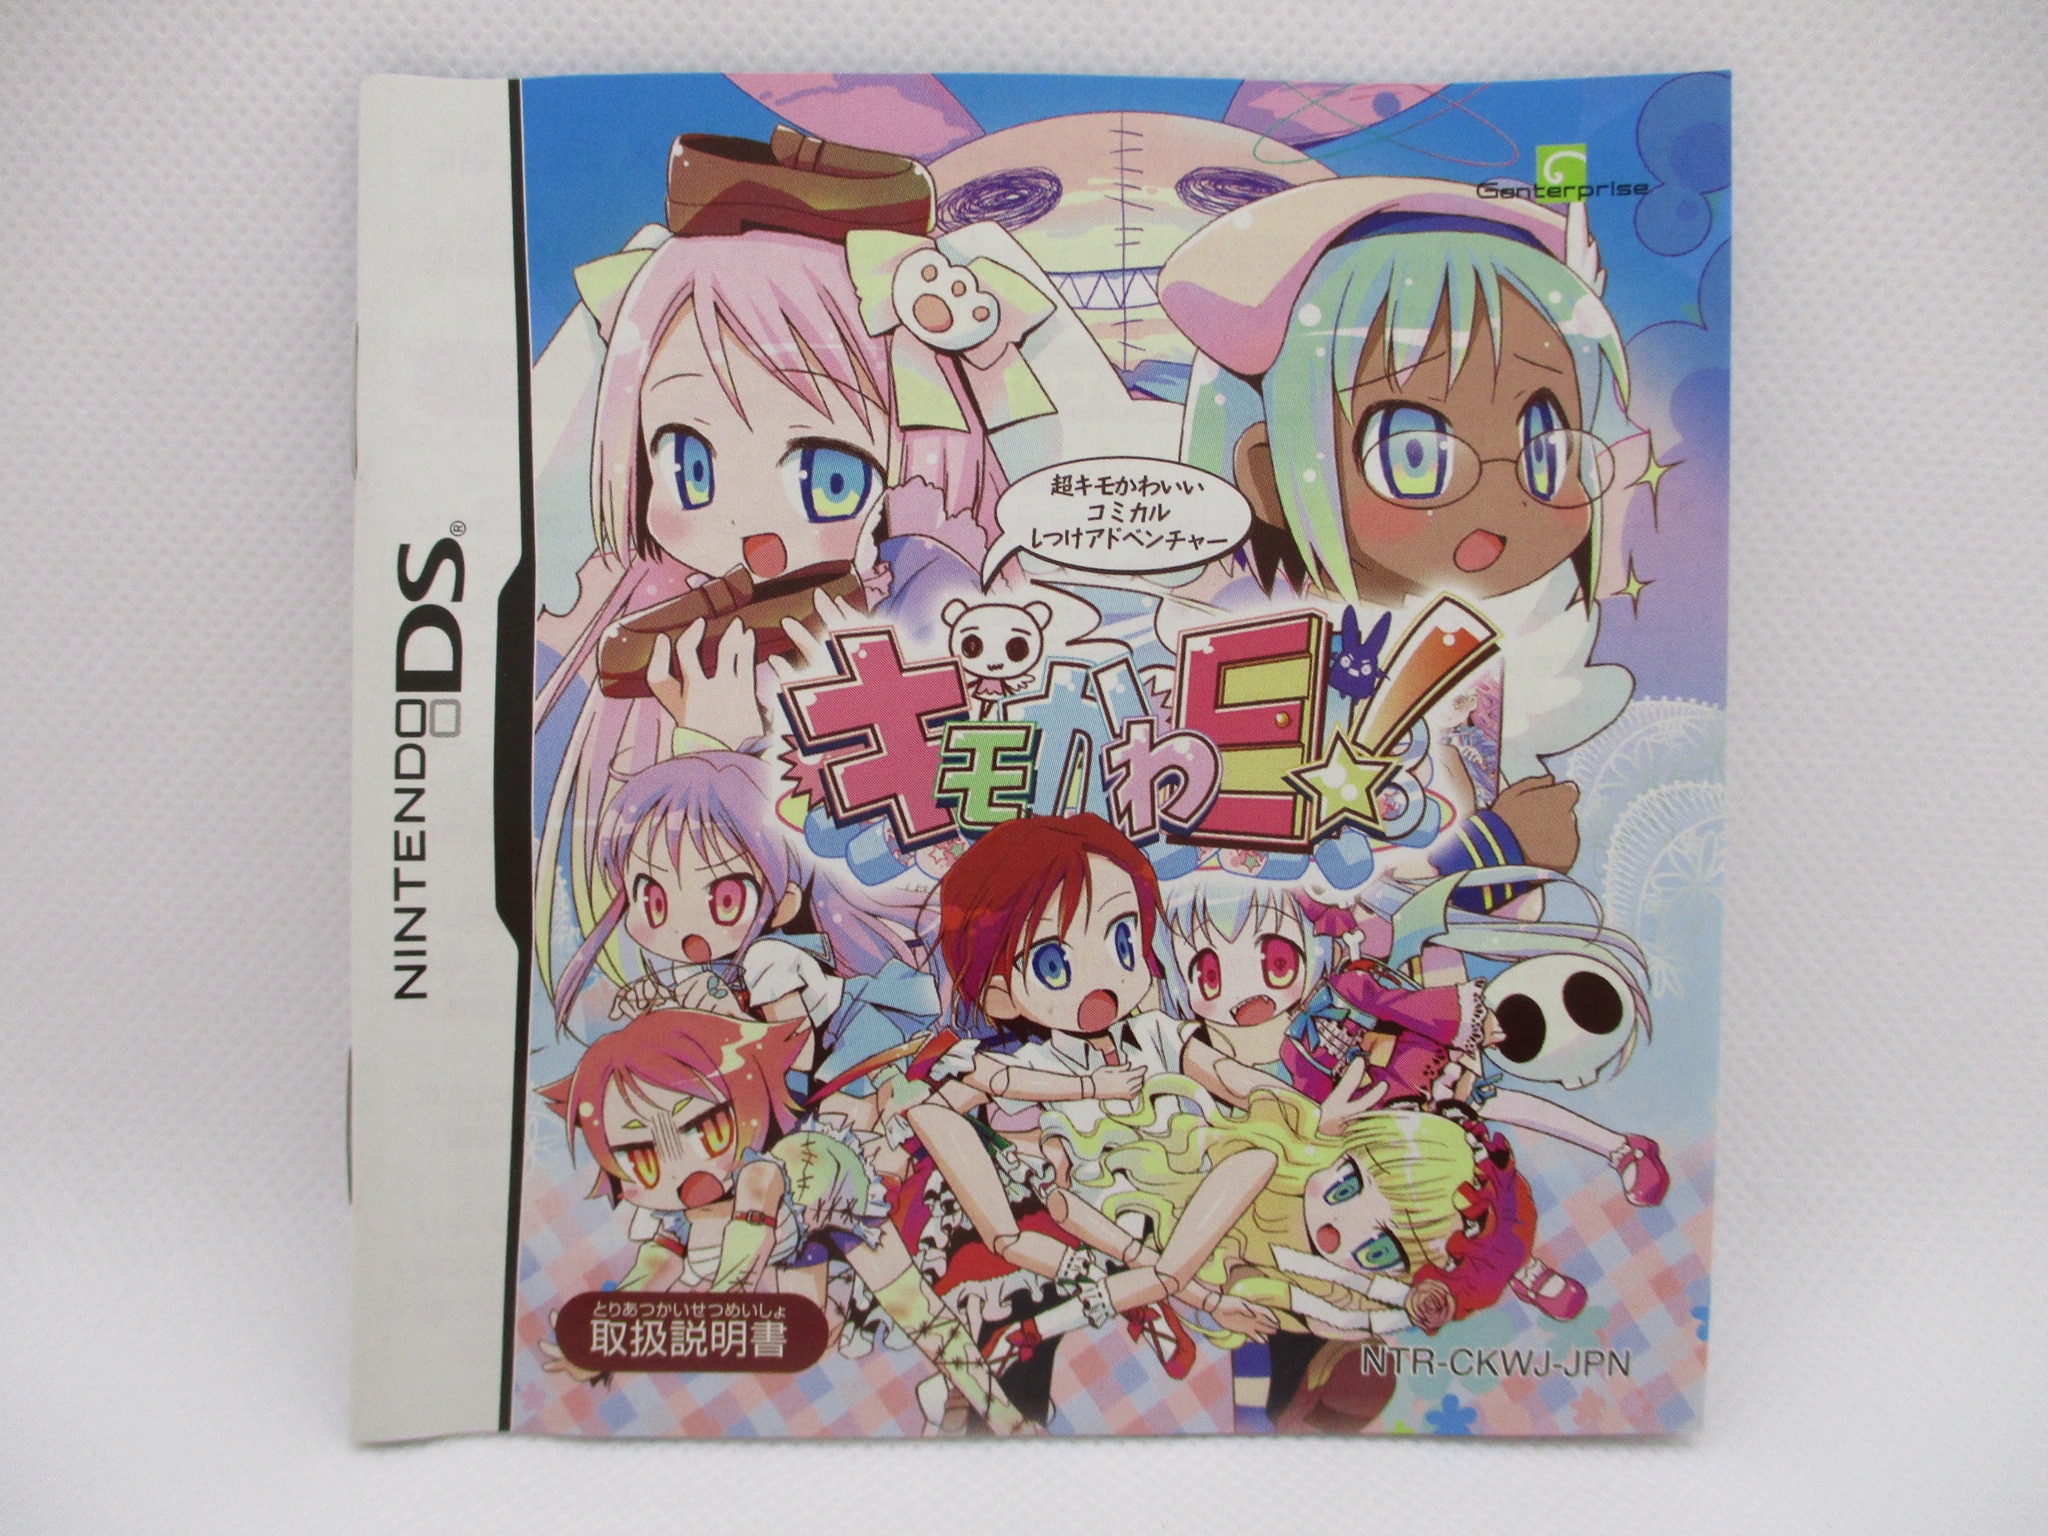 正式的 キモかわE!(初回限定版) 「キモかわE!」DS ニンテンドー3DS/2DS